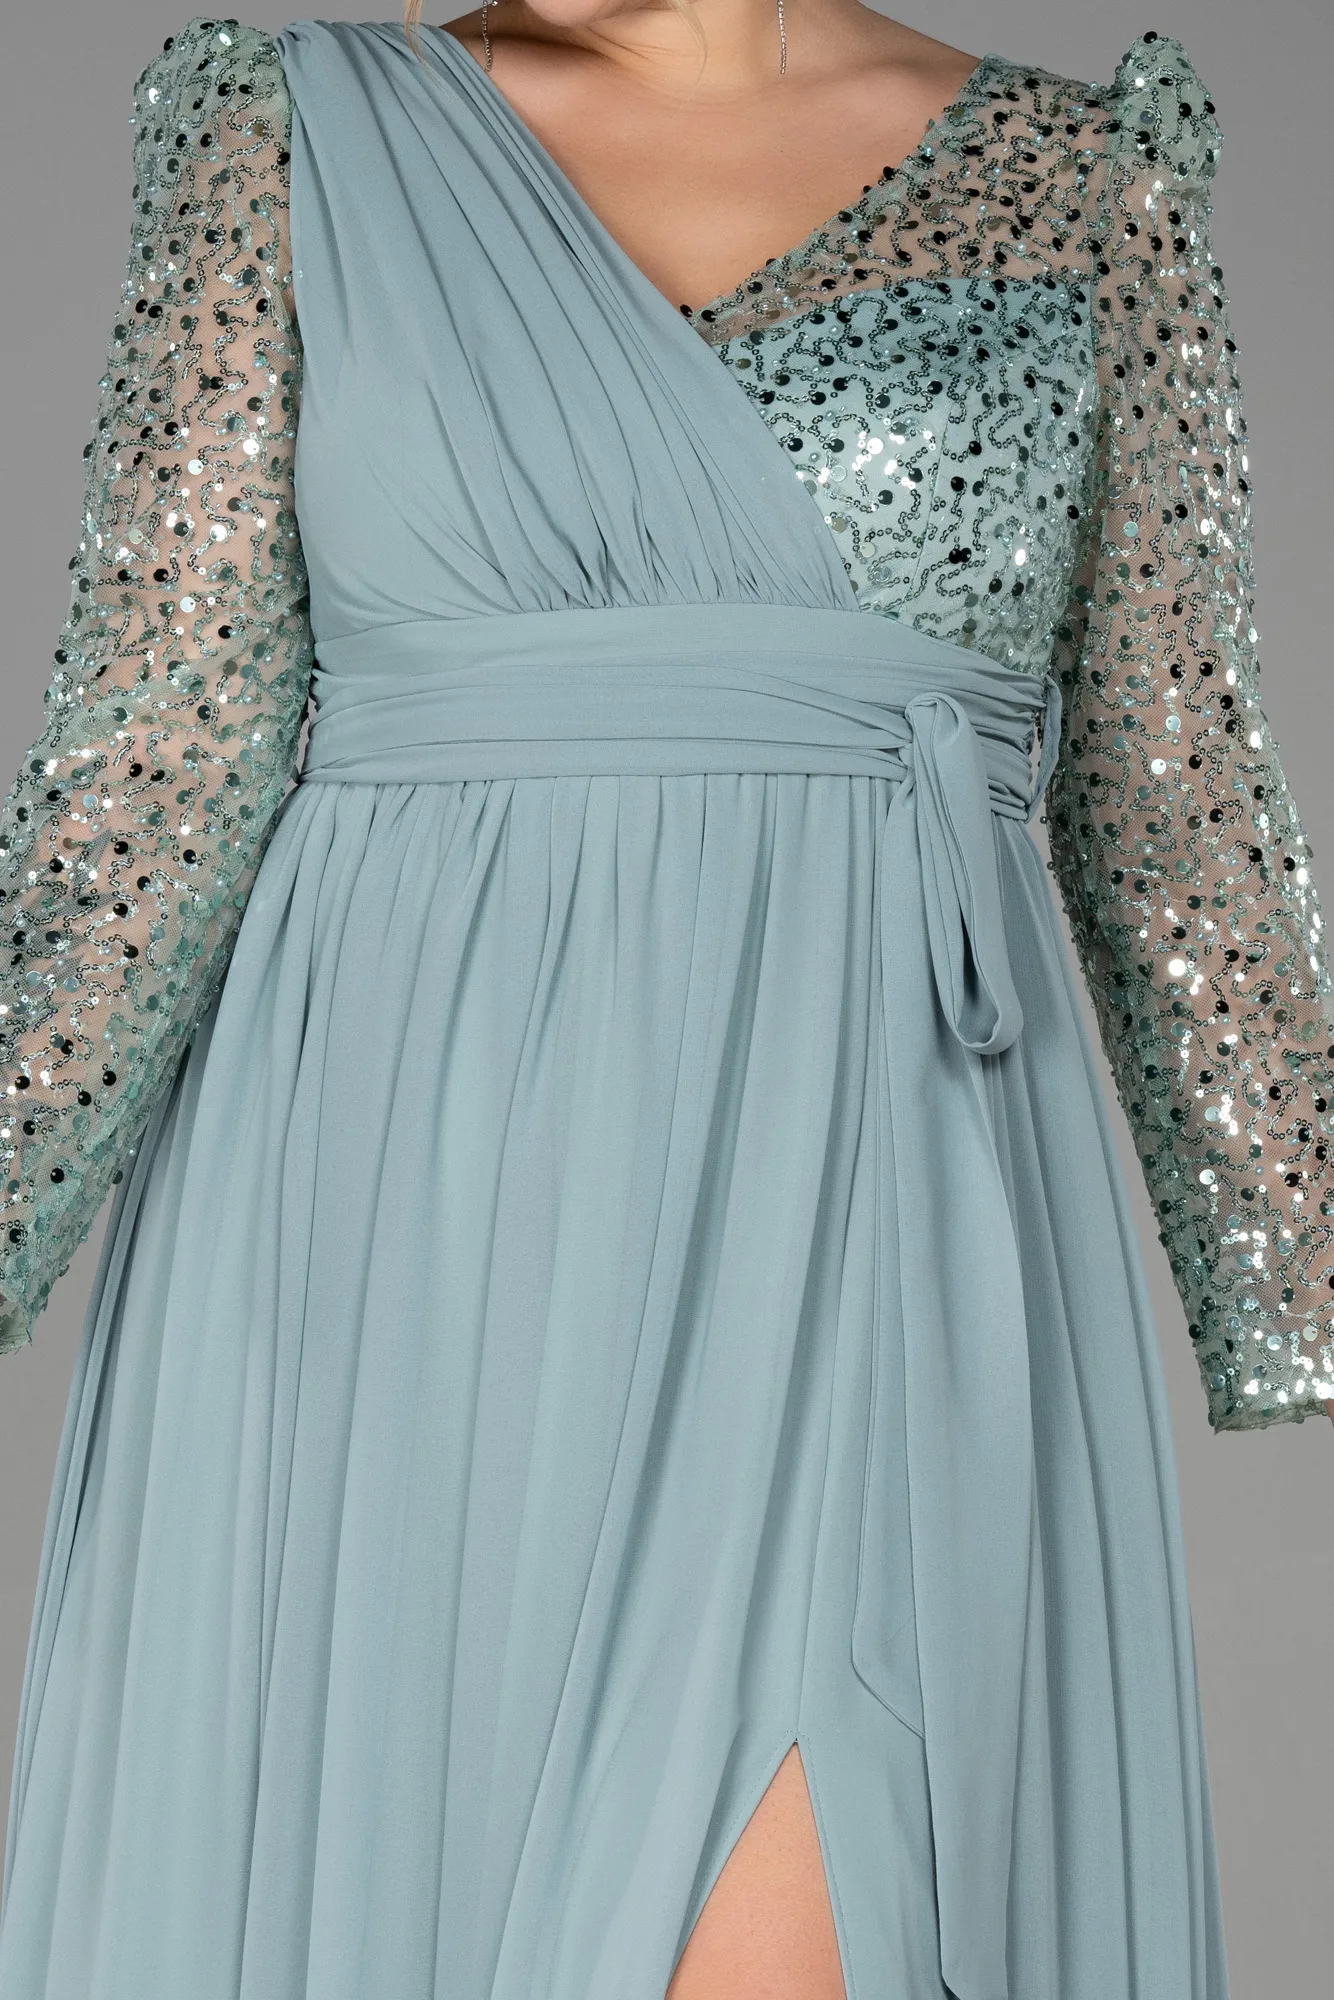 Turquoise-Long Chiffon Plus Size Evening Dress ABU3186